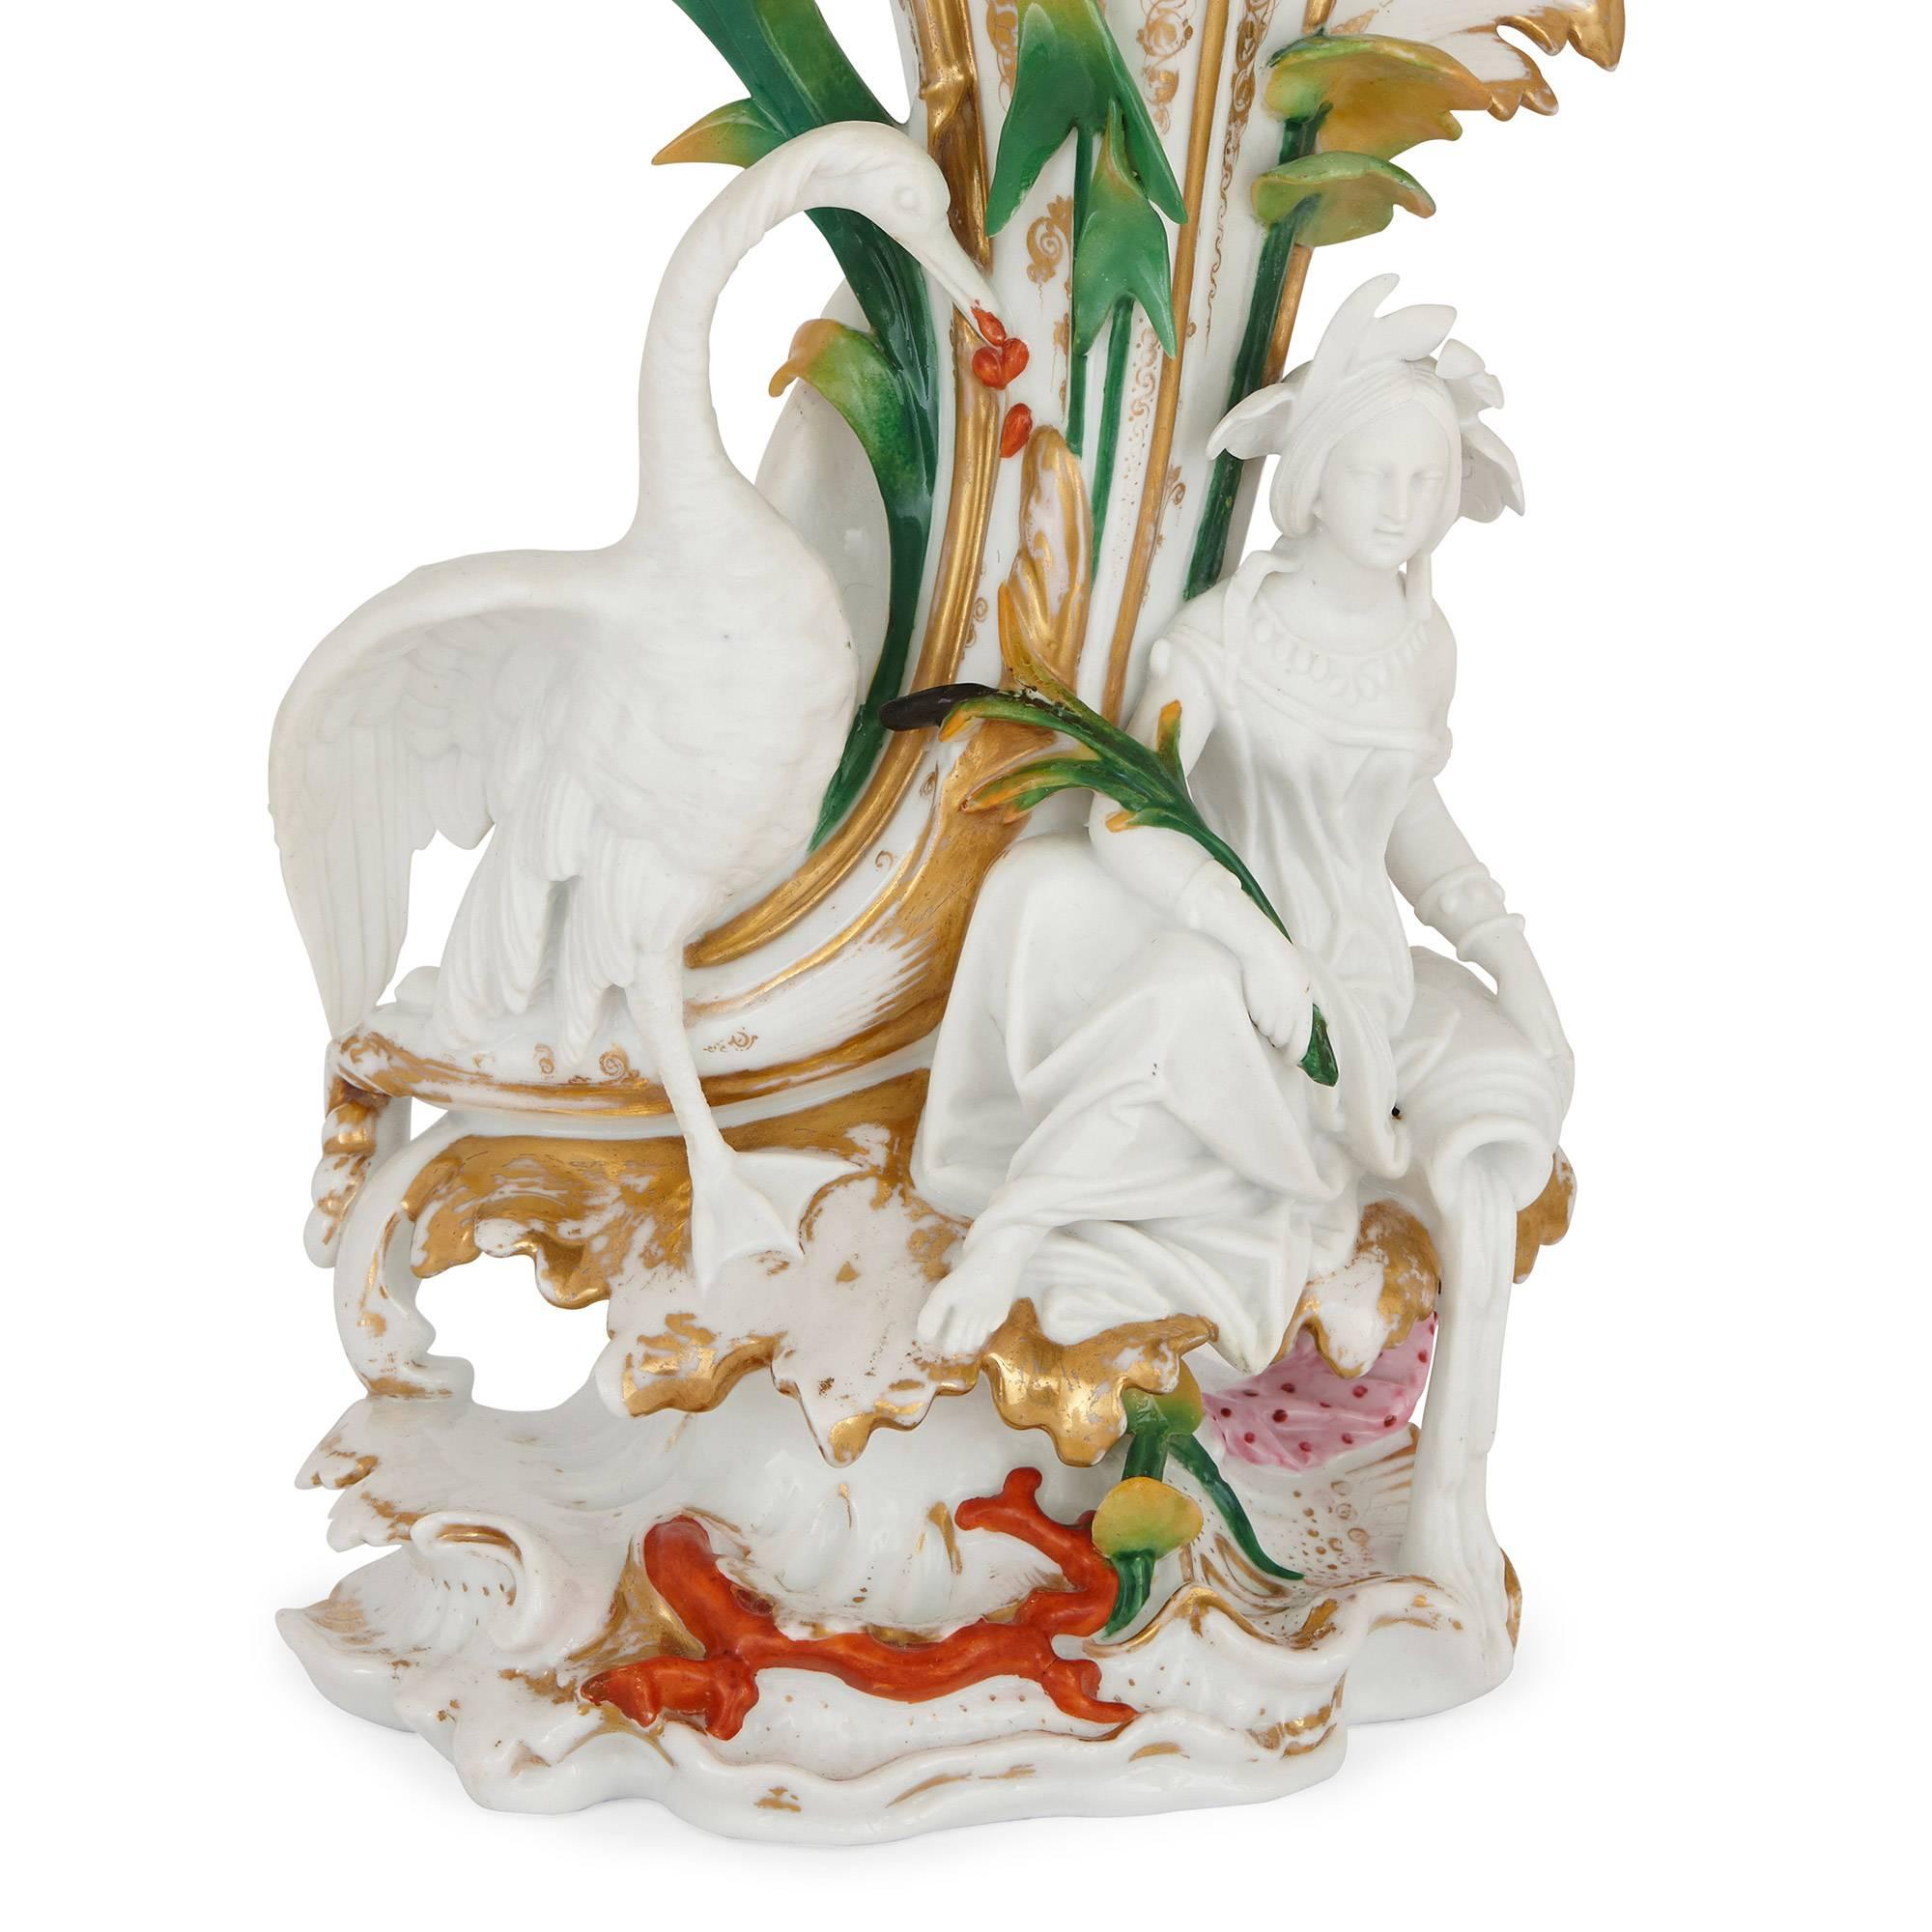 Chacun d'eux est en forme de trompette avec des figures allégoriques de Napoléon III appliquées.

Ces magnifiques vases en porcelaine se distinguent par leur palette de couleurs vives et fraîches et leur col en forme de trompette, évoquant des